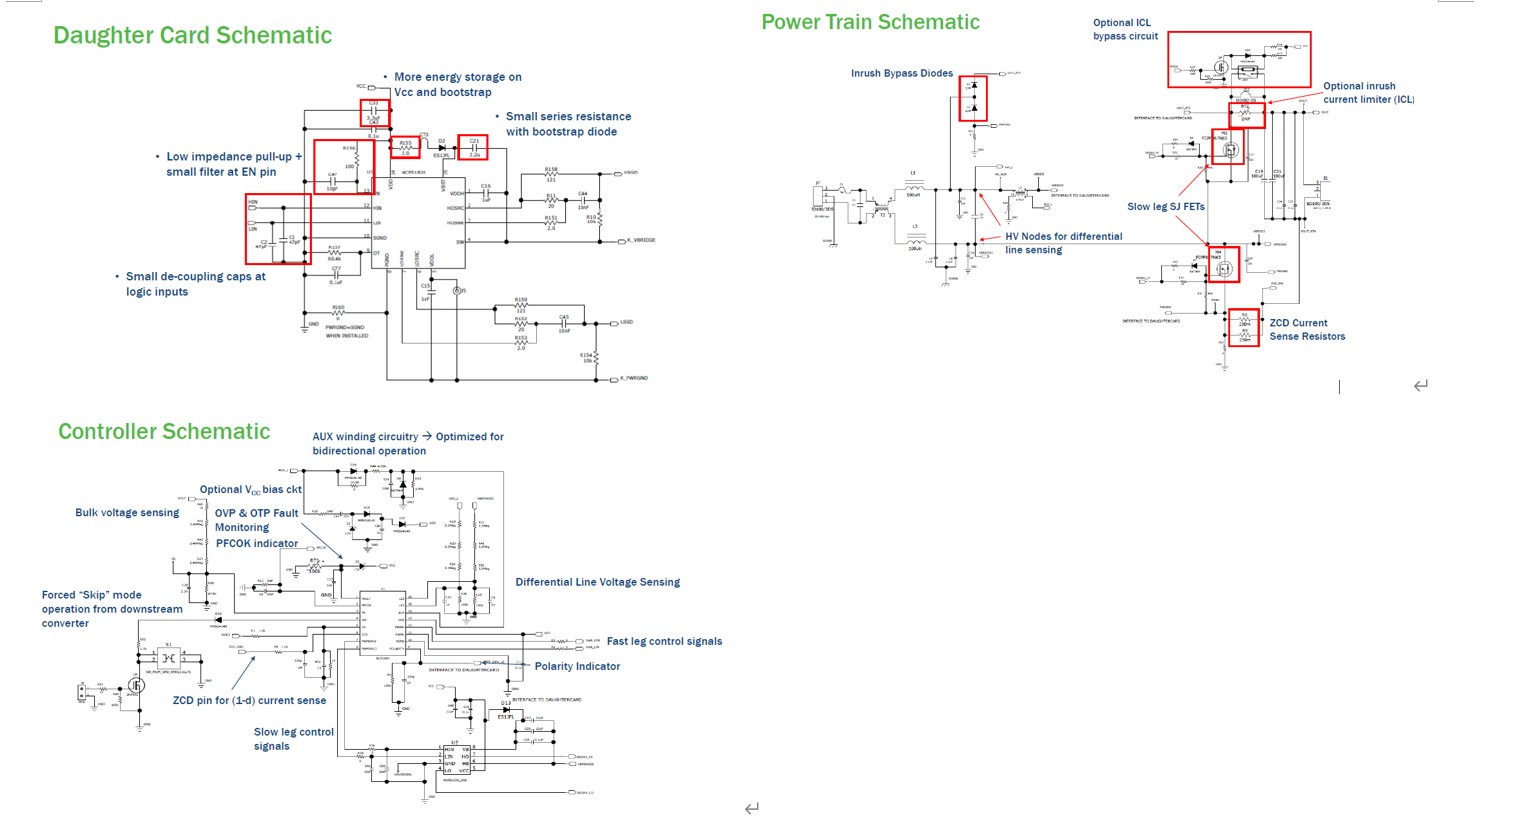 安森美半导体推出新一代Totem Pole 功率因数调整控制IC NCP1680 应用于300W超高效网通电源